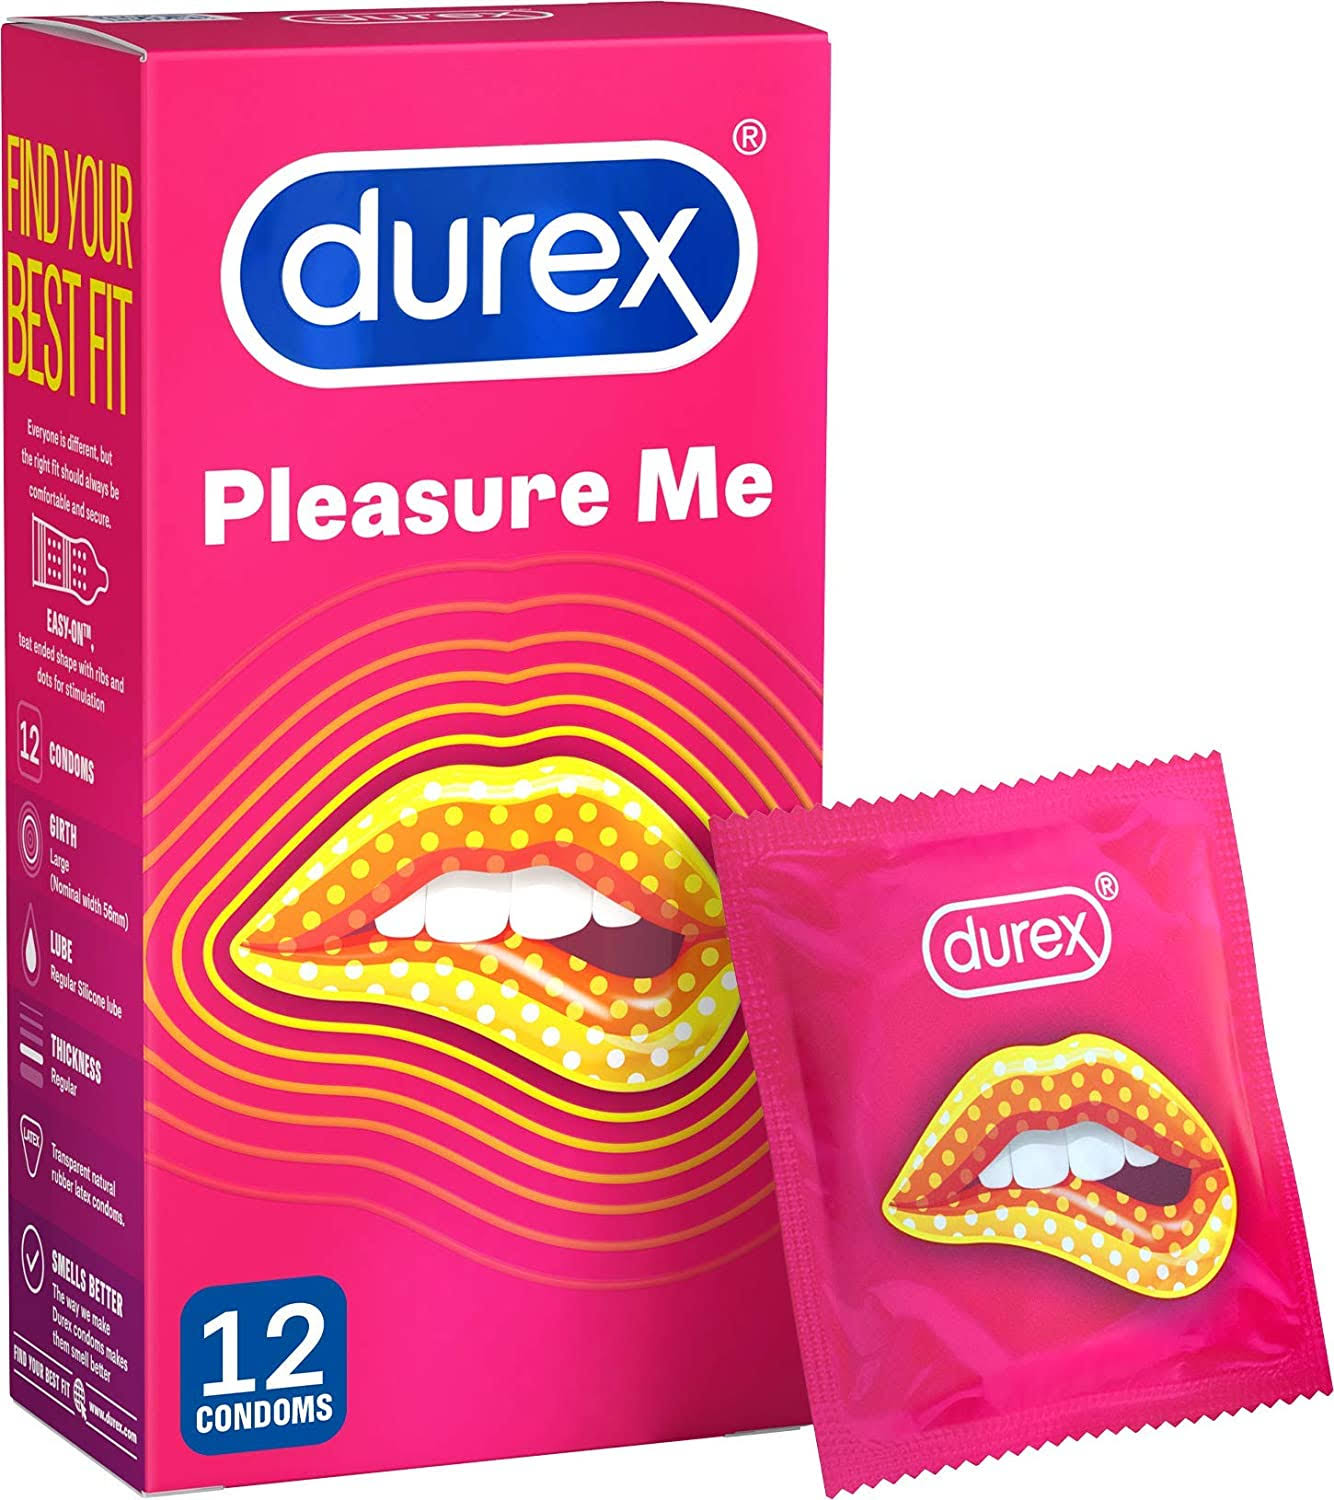 Durex Pleasure Me Condoms - 12pcs